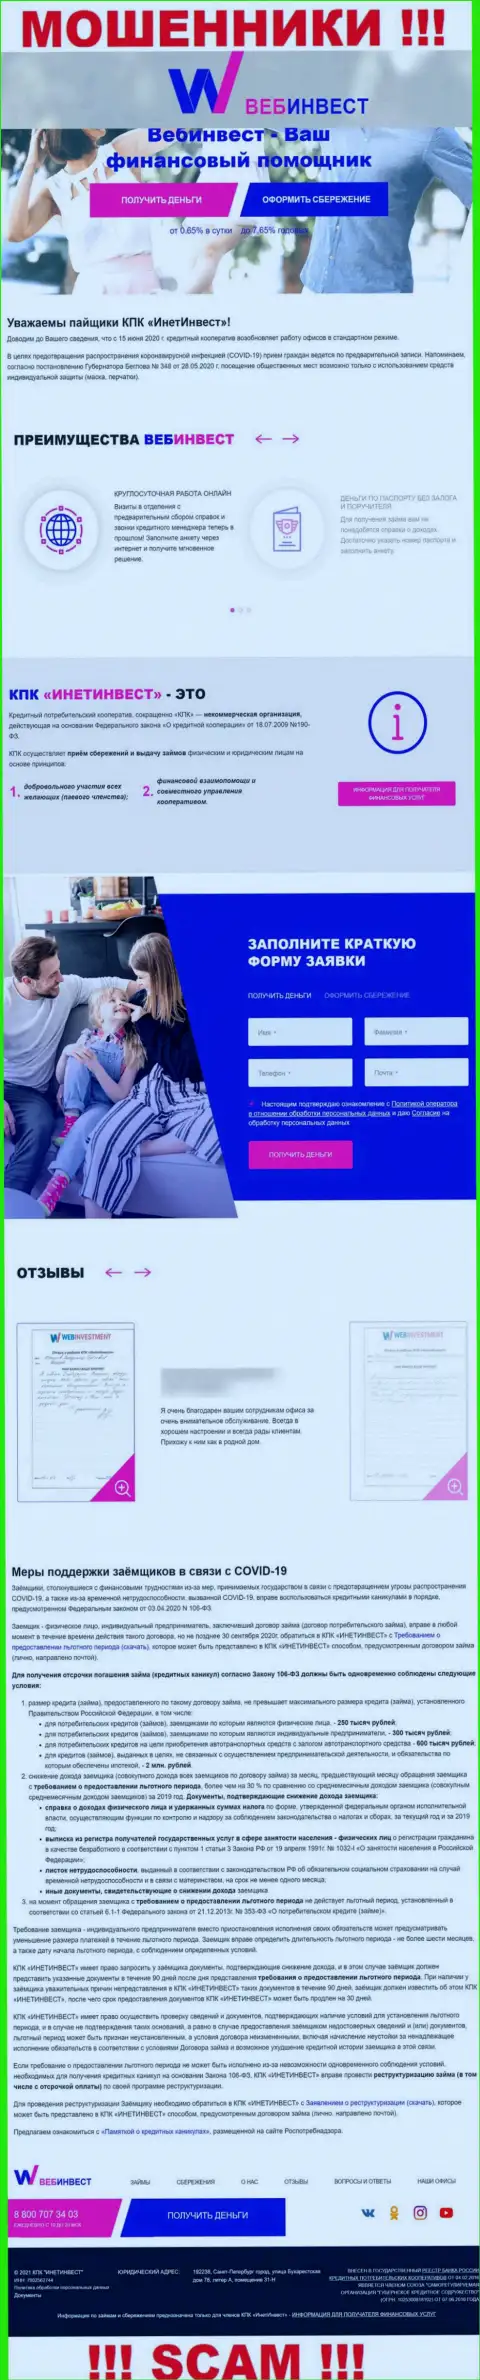 ВебИнвестмент Ру - это официальный web-портал интернет-жуликов Веб Инвестмент